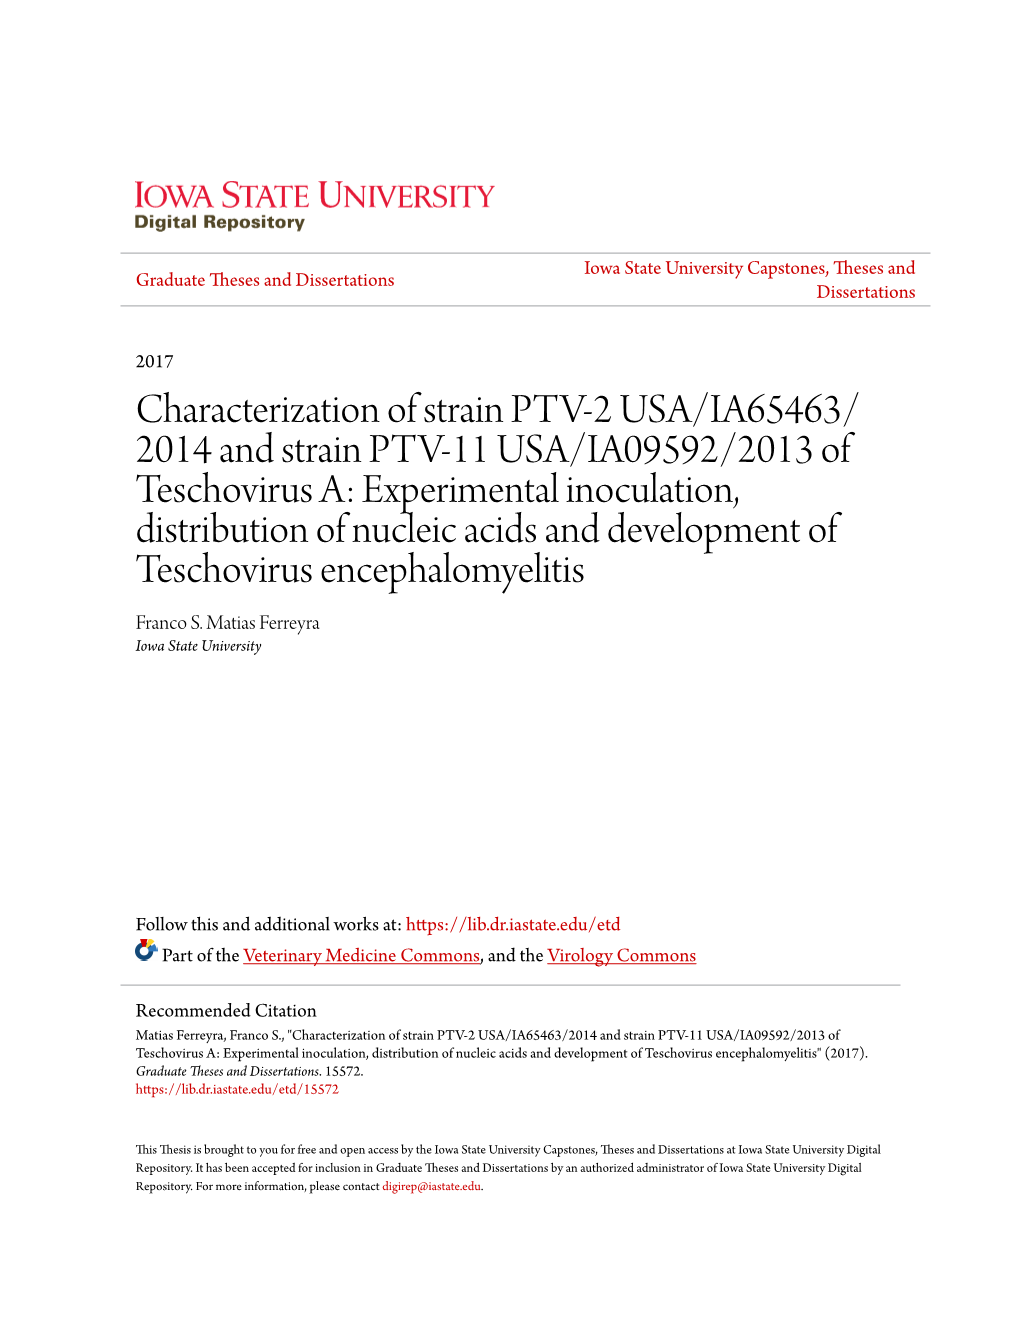 Characterization of Strain PTV-2 USA/IA65463/2014 and Strain PTV-11 USA/IA09592/2013 of Teschovirus A: Experimental Inoculation